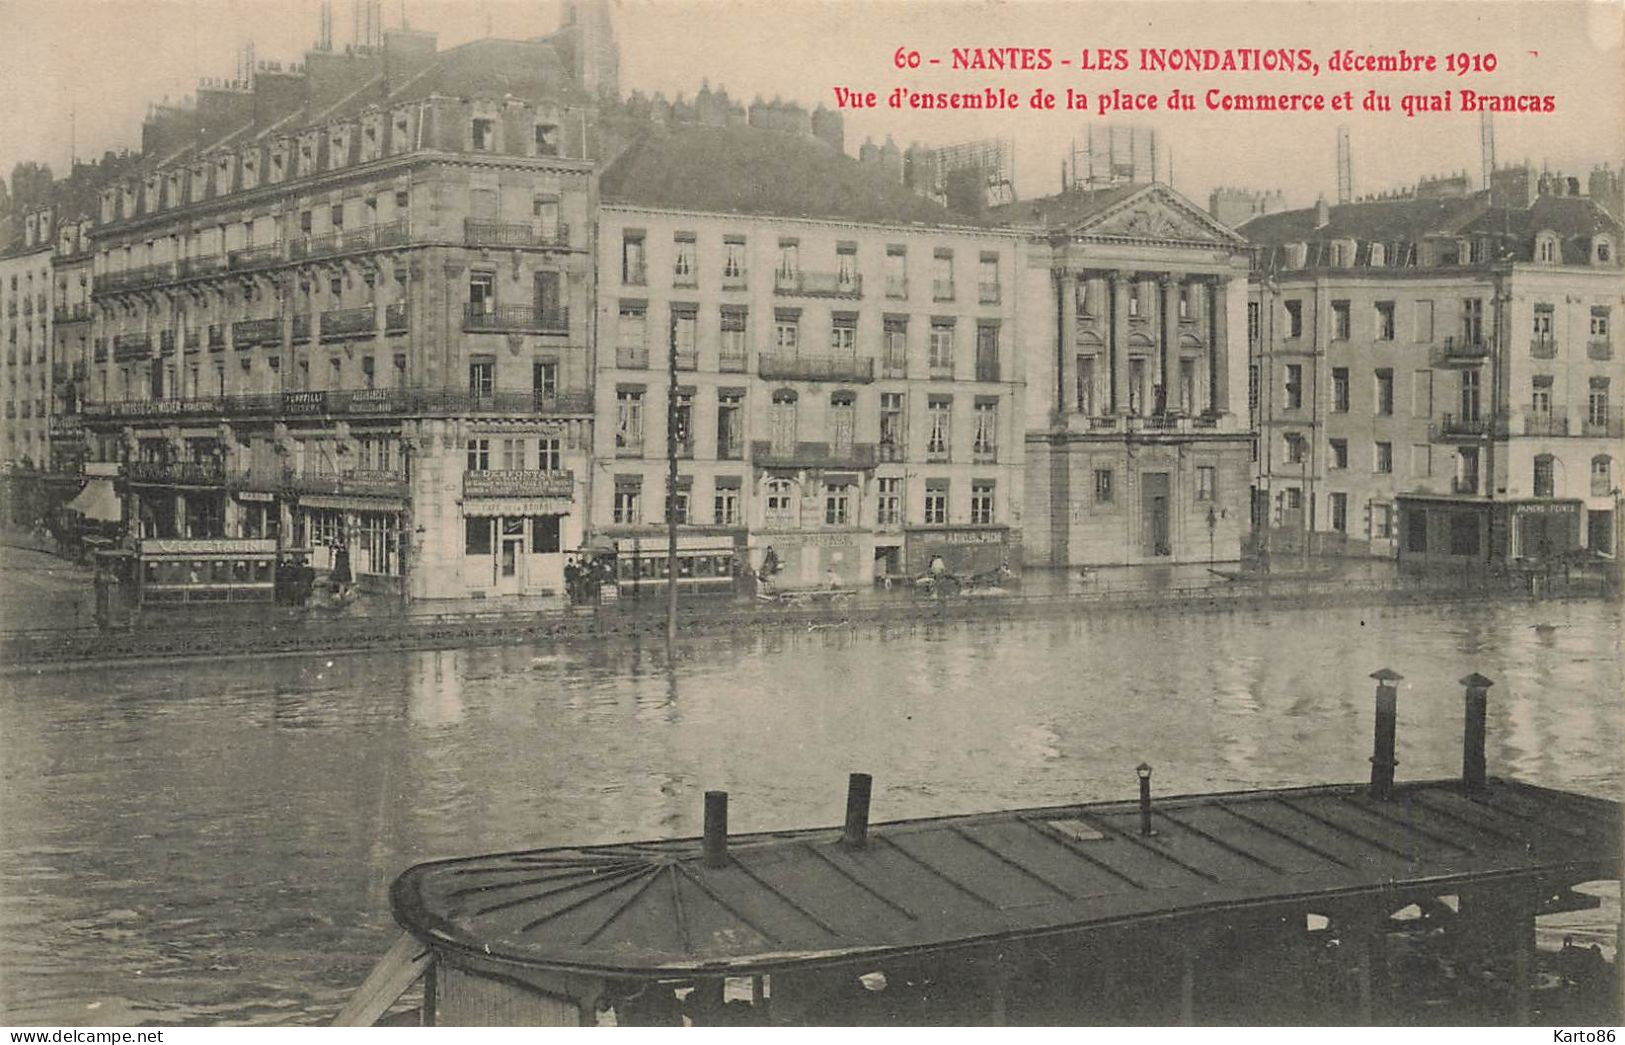 Nantes * Bateau Lavoir * Vue D'ensemble De La Place Du Commerce Et Du Quai Brancas * Inondations Décembre 1910 - Nantes